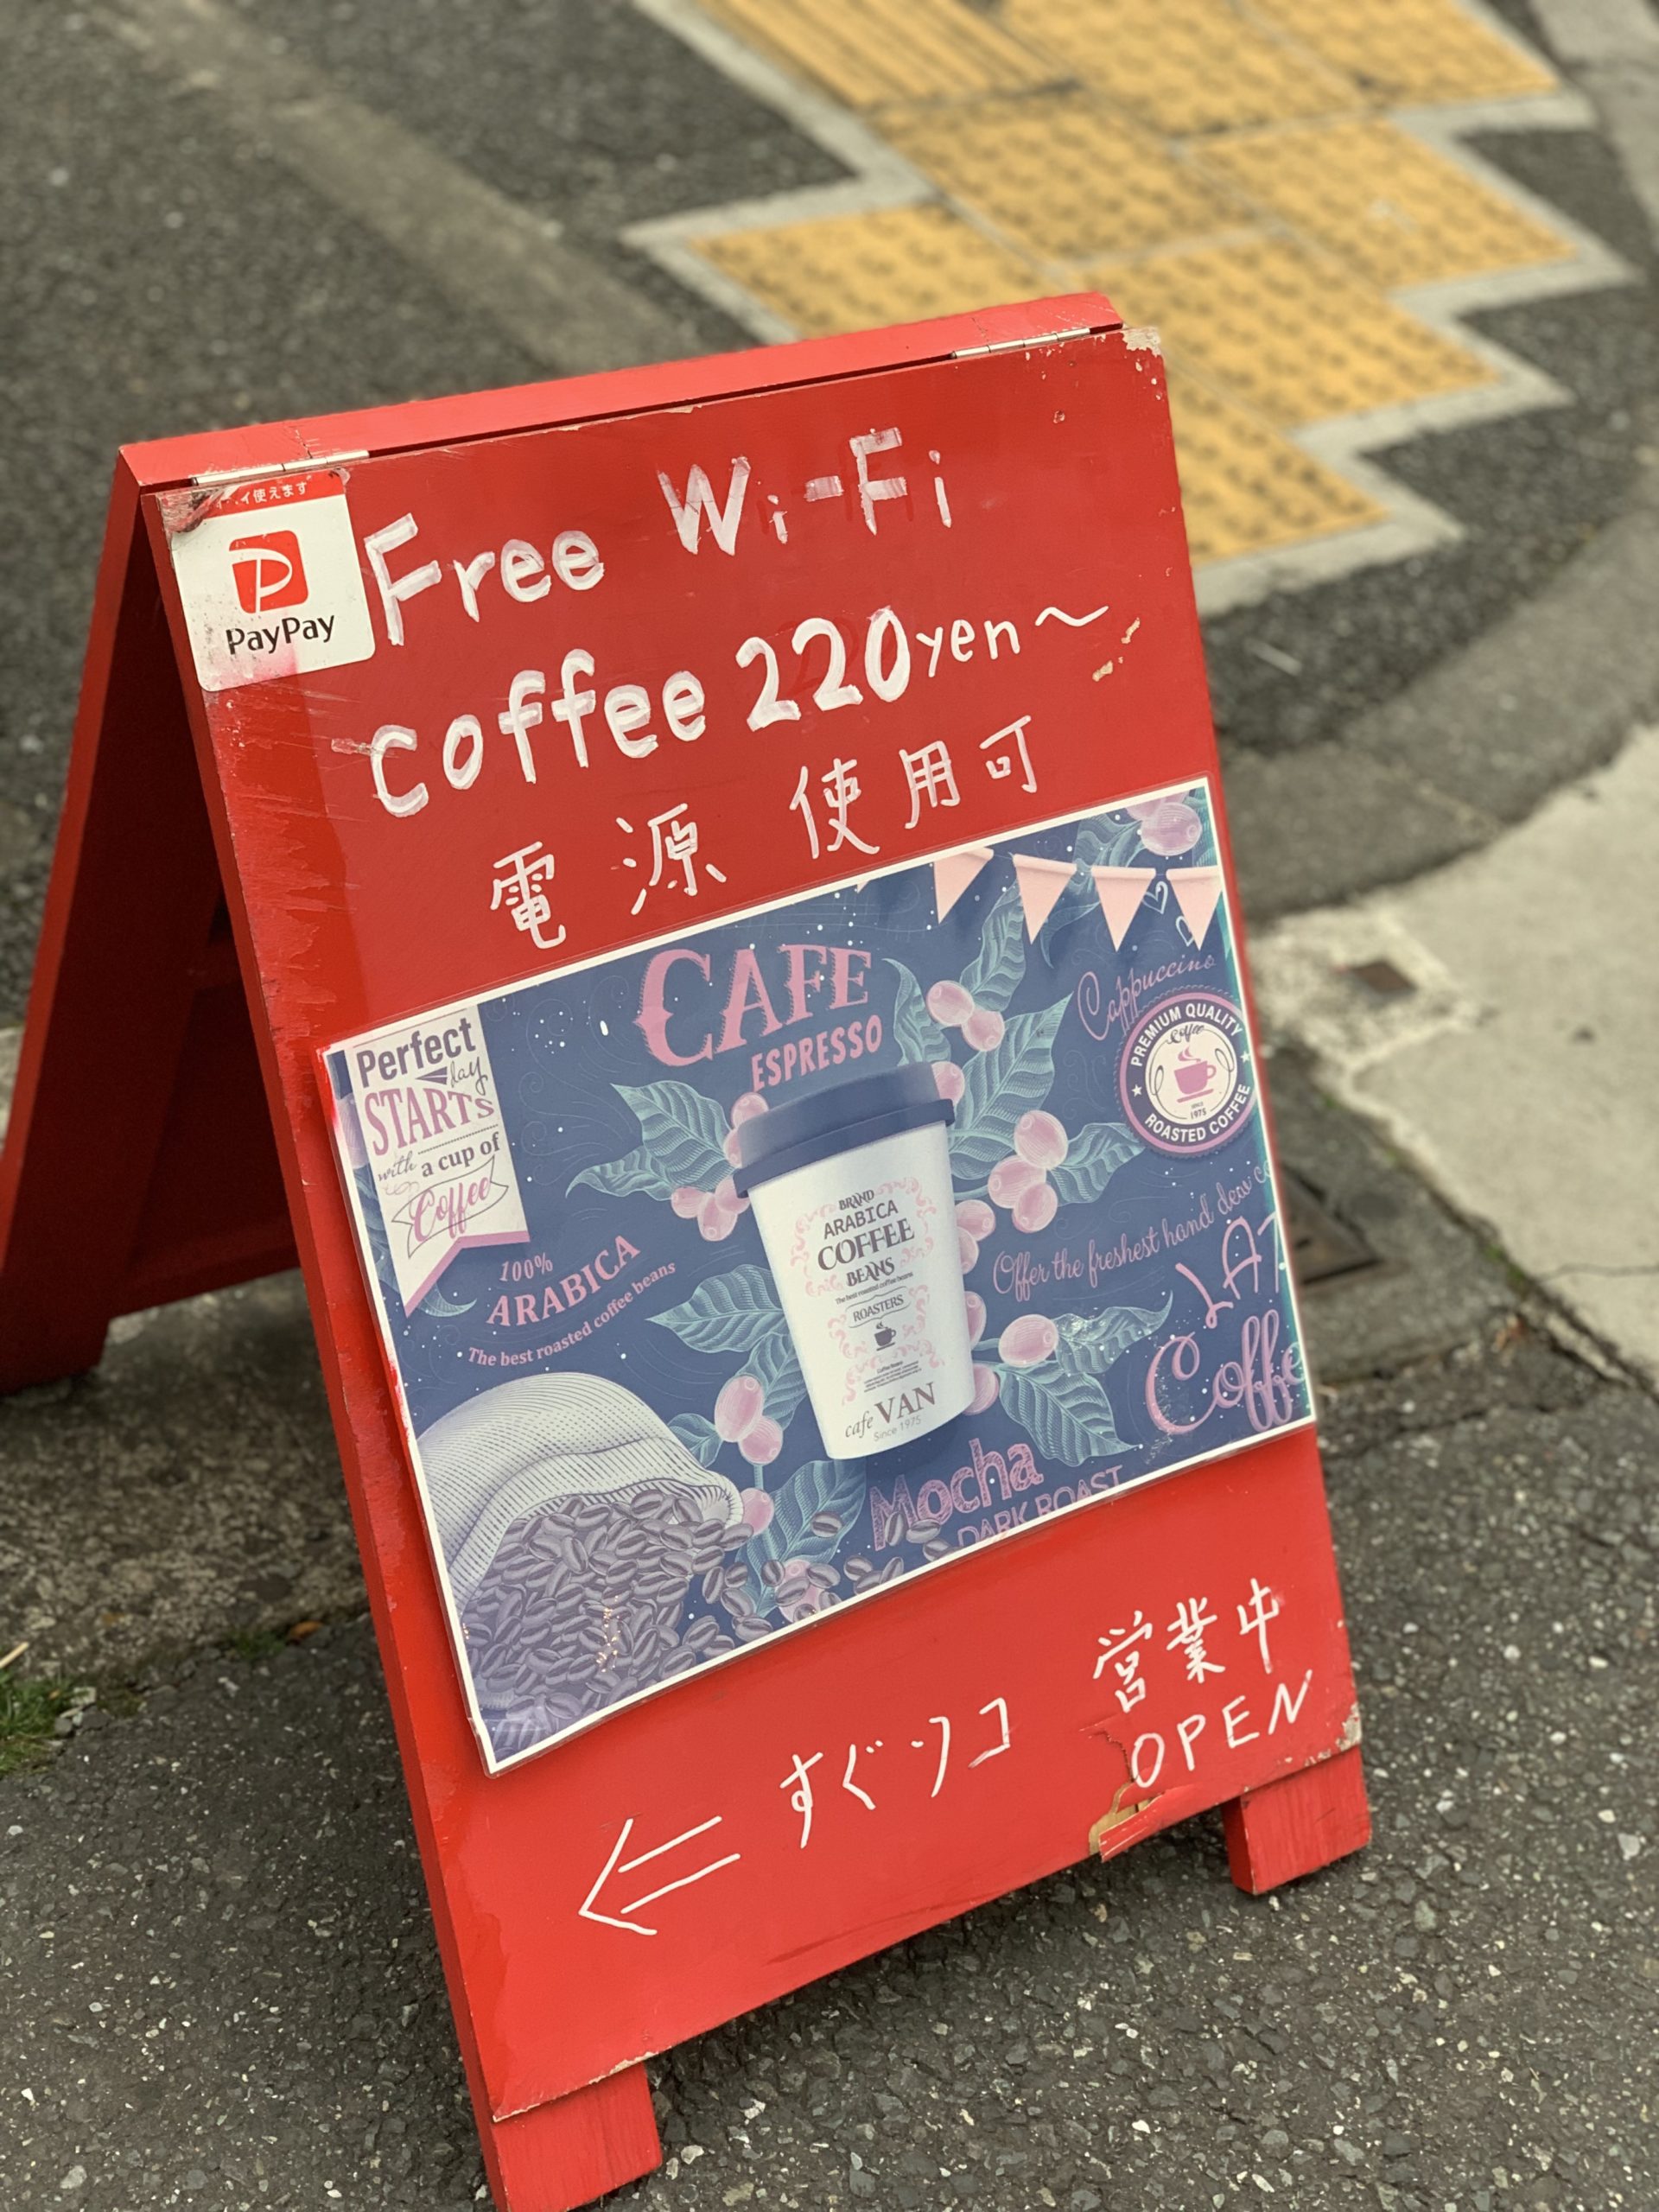 新橋駅烏森口　電源カフェ　cafe VAN（カフェバン）　Wi-Fi